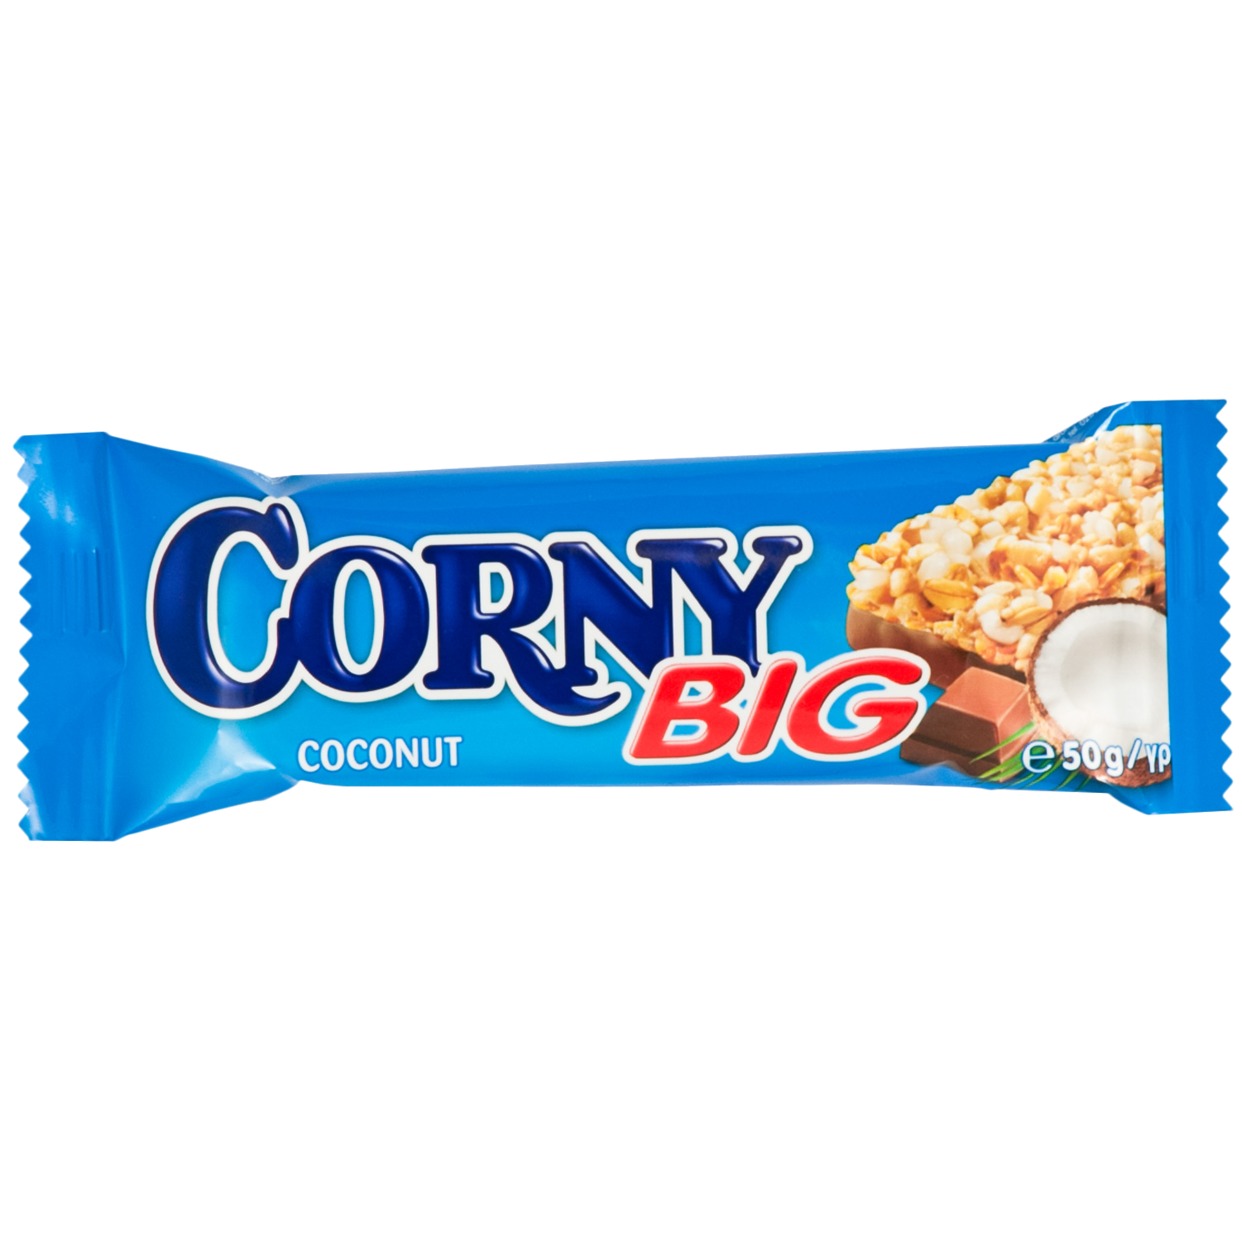 Злаковая Полоска Corny, кокос-молочный шоколад, 50 г по акции в Пятерочке